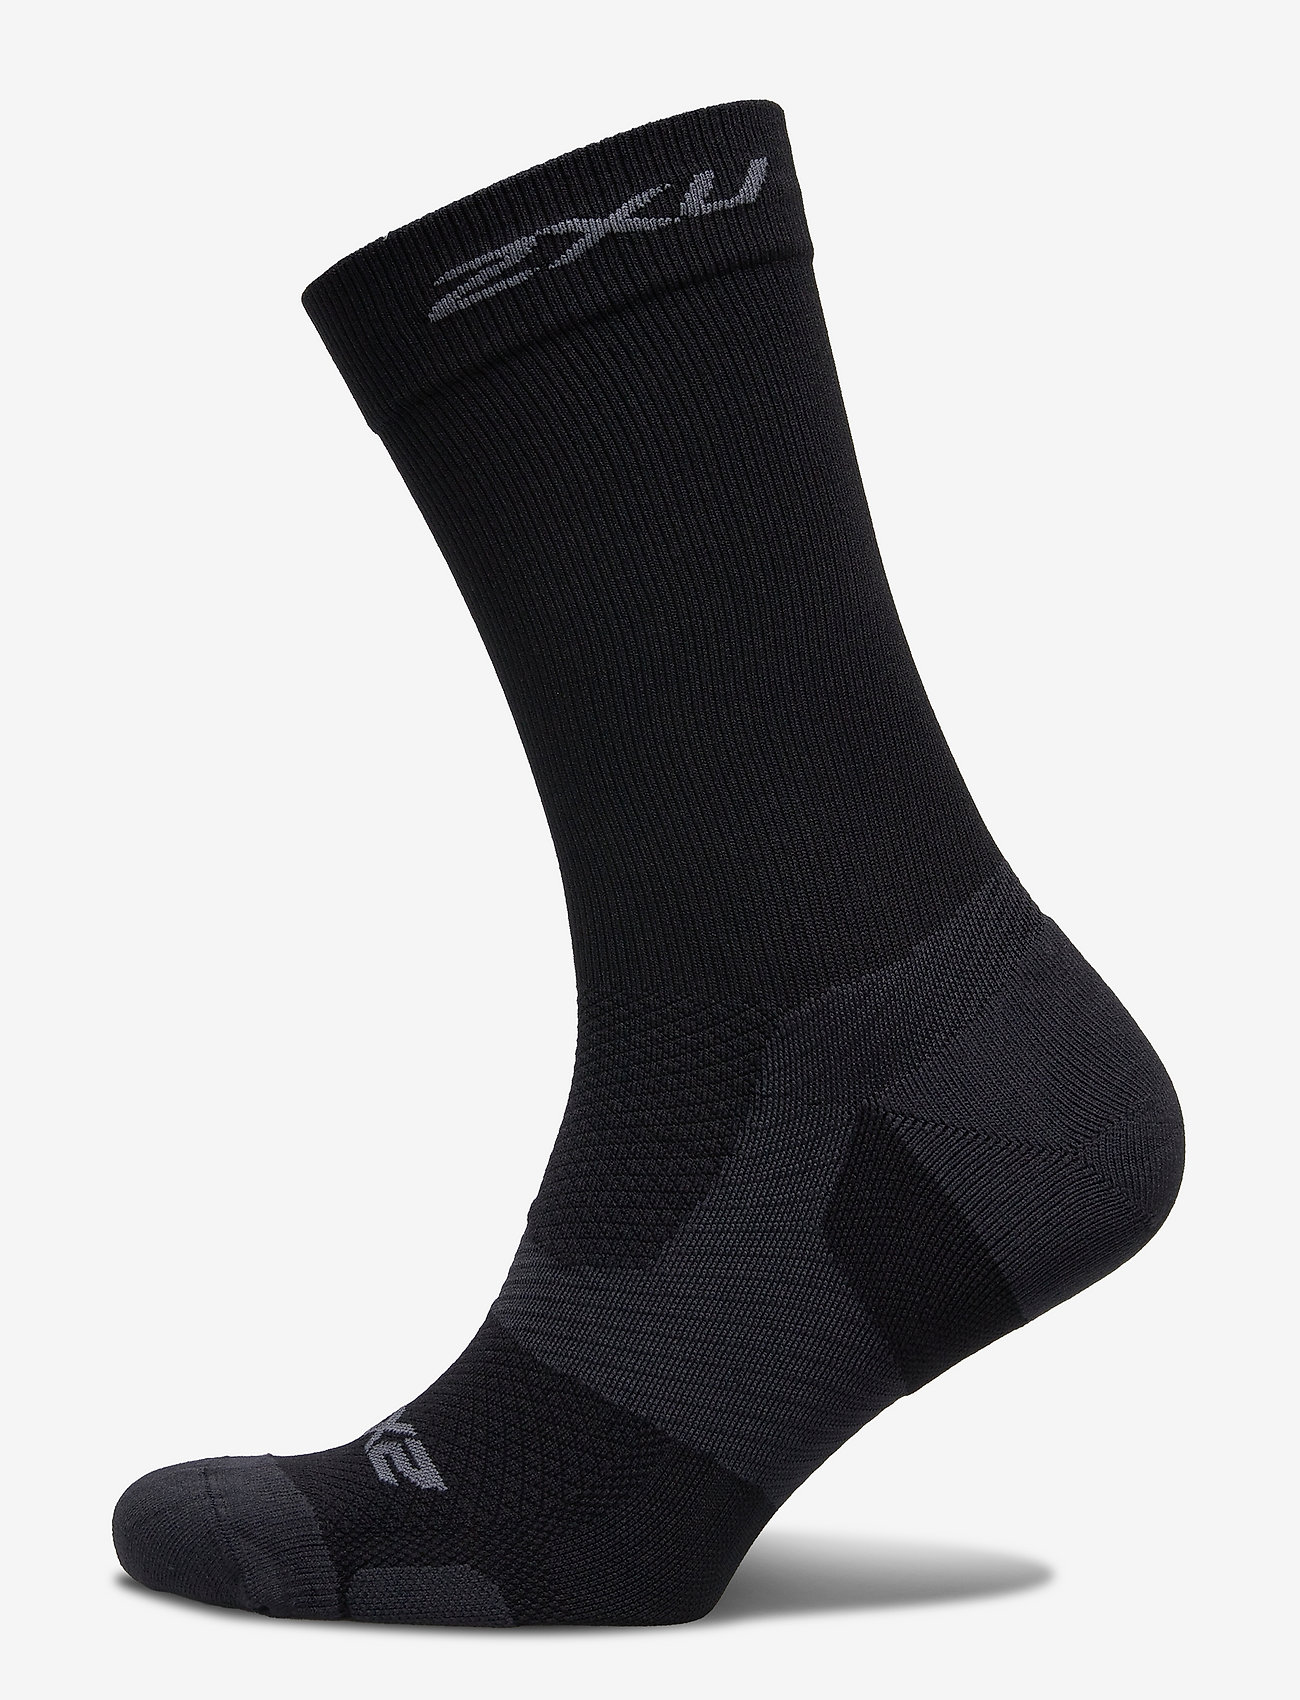 2XU Vectr Light Cushion Crew Sock - Regular socks - Boozt.com